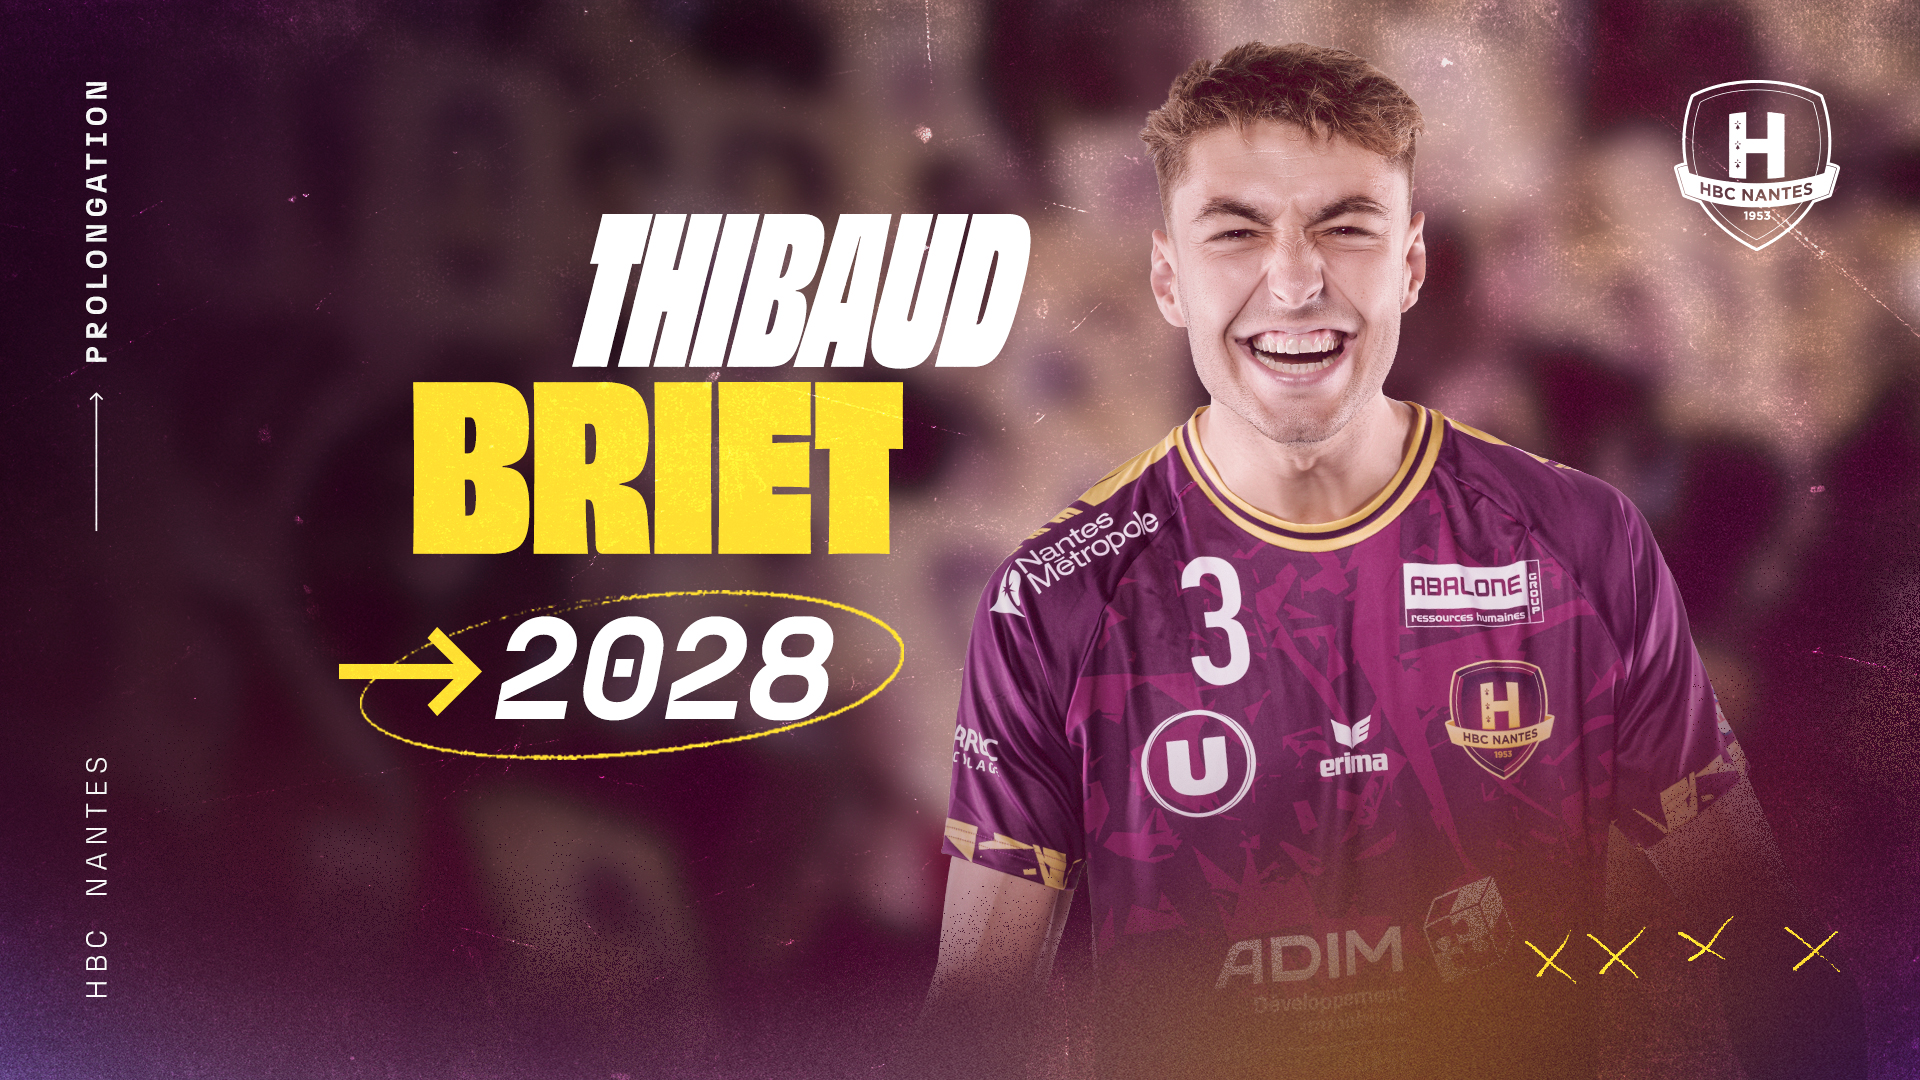 Thibaud Briet prolonge au HBC Nantes jusqu’en 2028 !